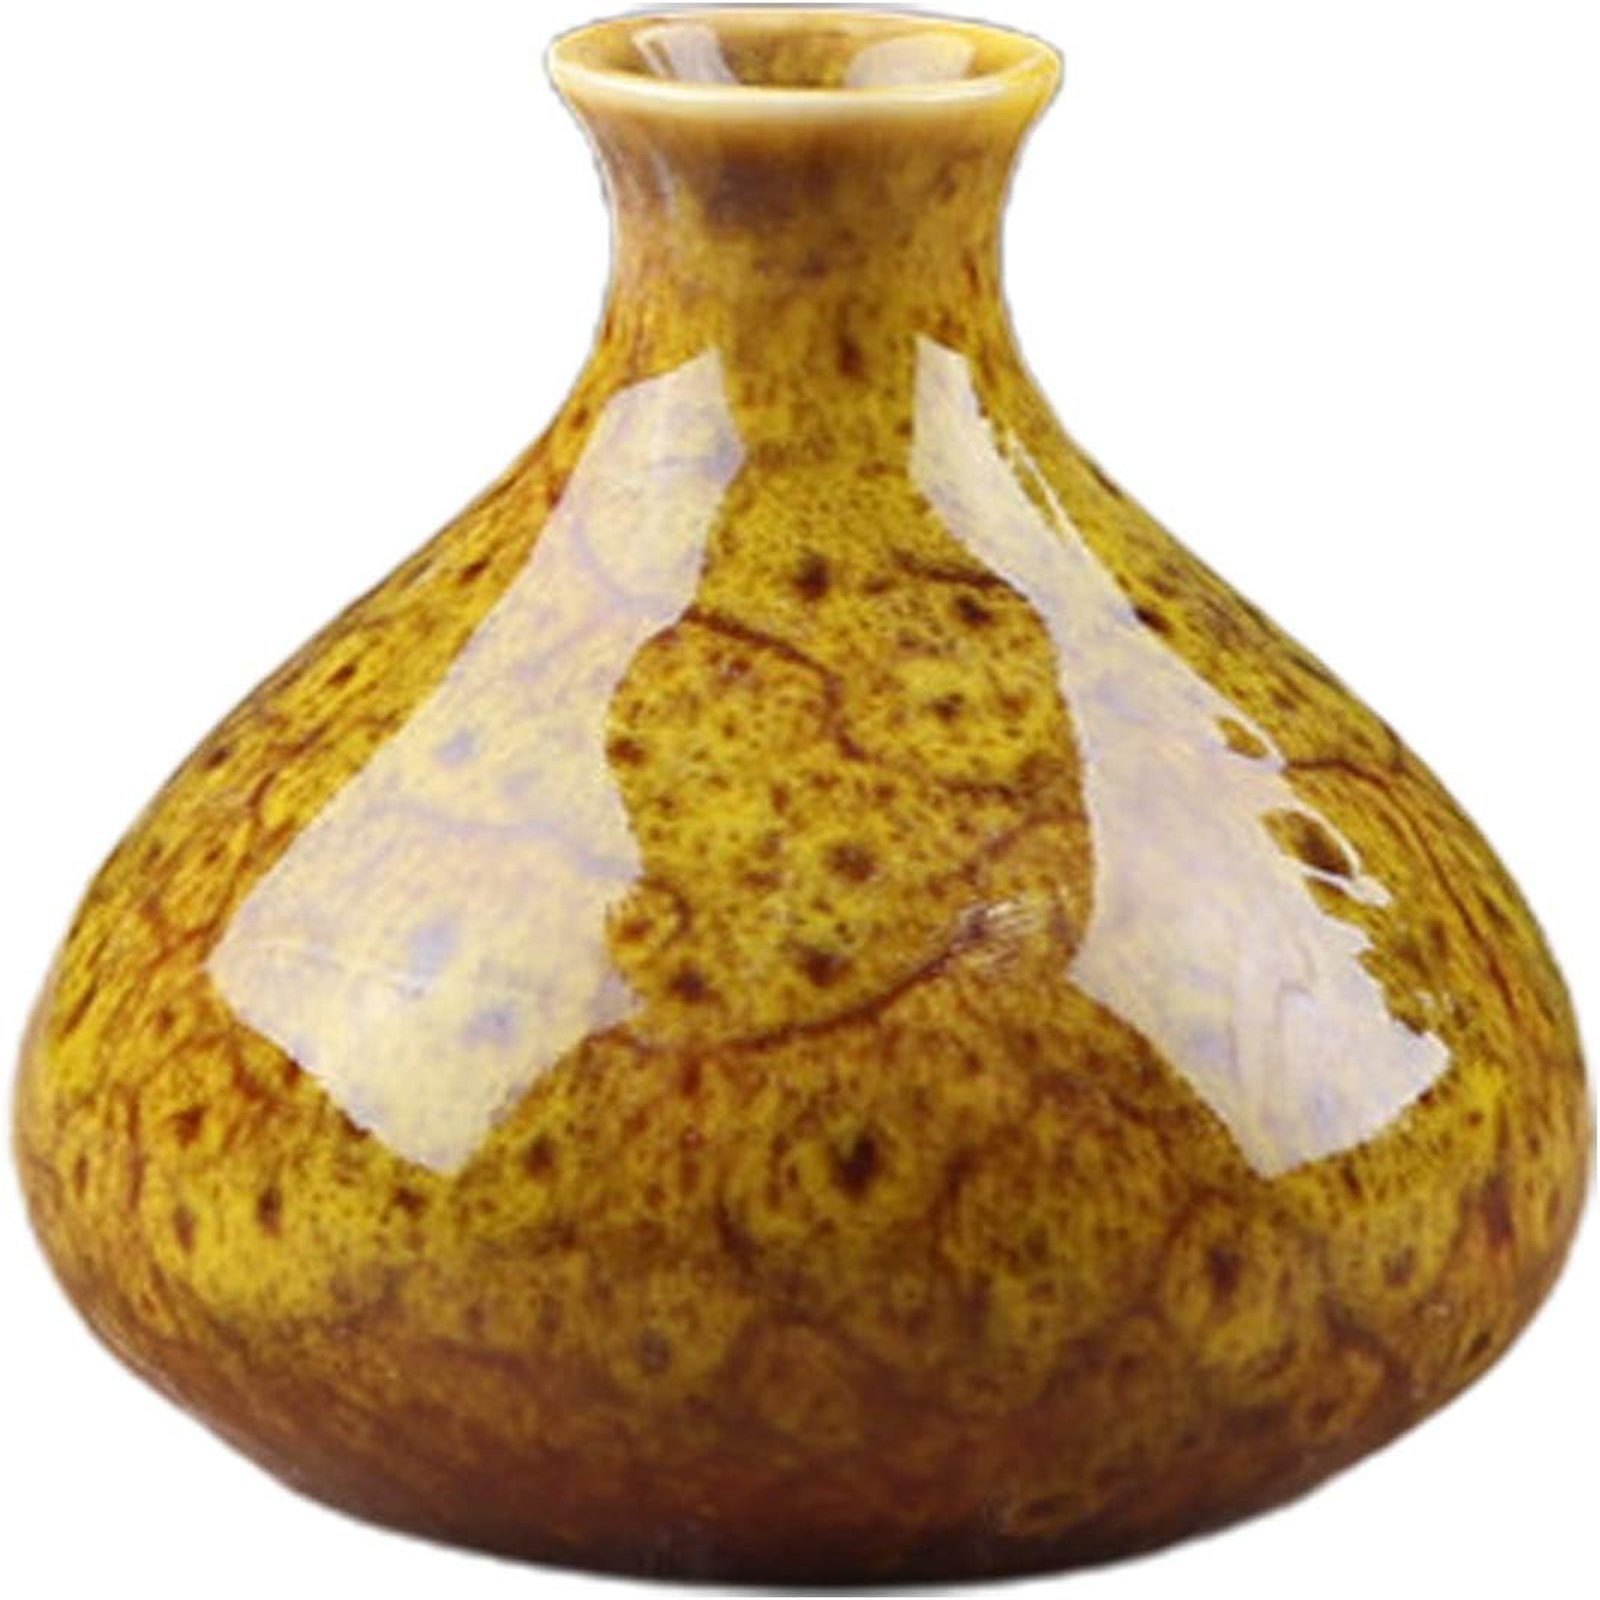 Brenngeformte Regal, 2.4cm,7x7.5cm,bunt SEEZSSA Keramik-Vase,großer deko Keramikvase,Blumentopf Bauch, für Heimdekoration, Dekovase Gelb Wohnzimmer, Kaliber